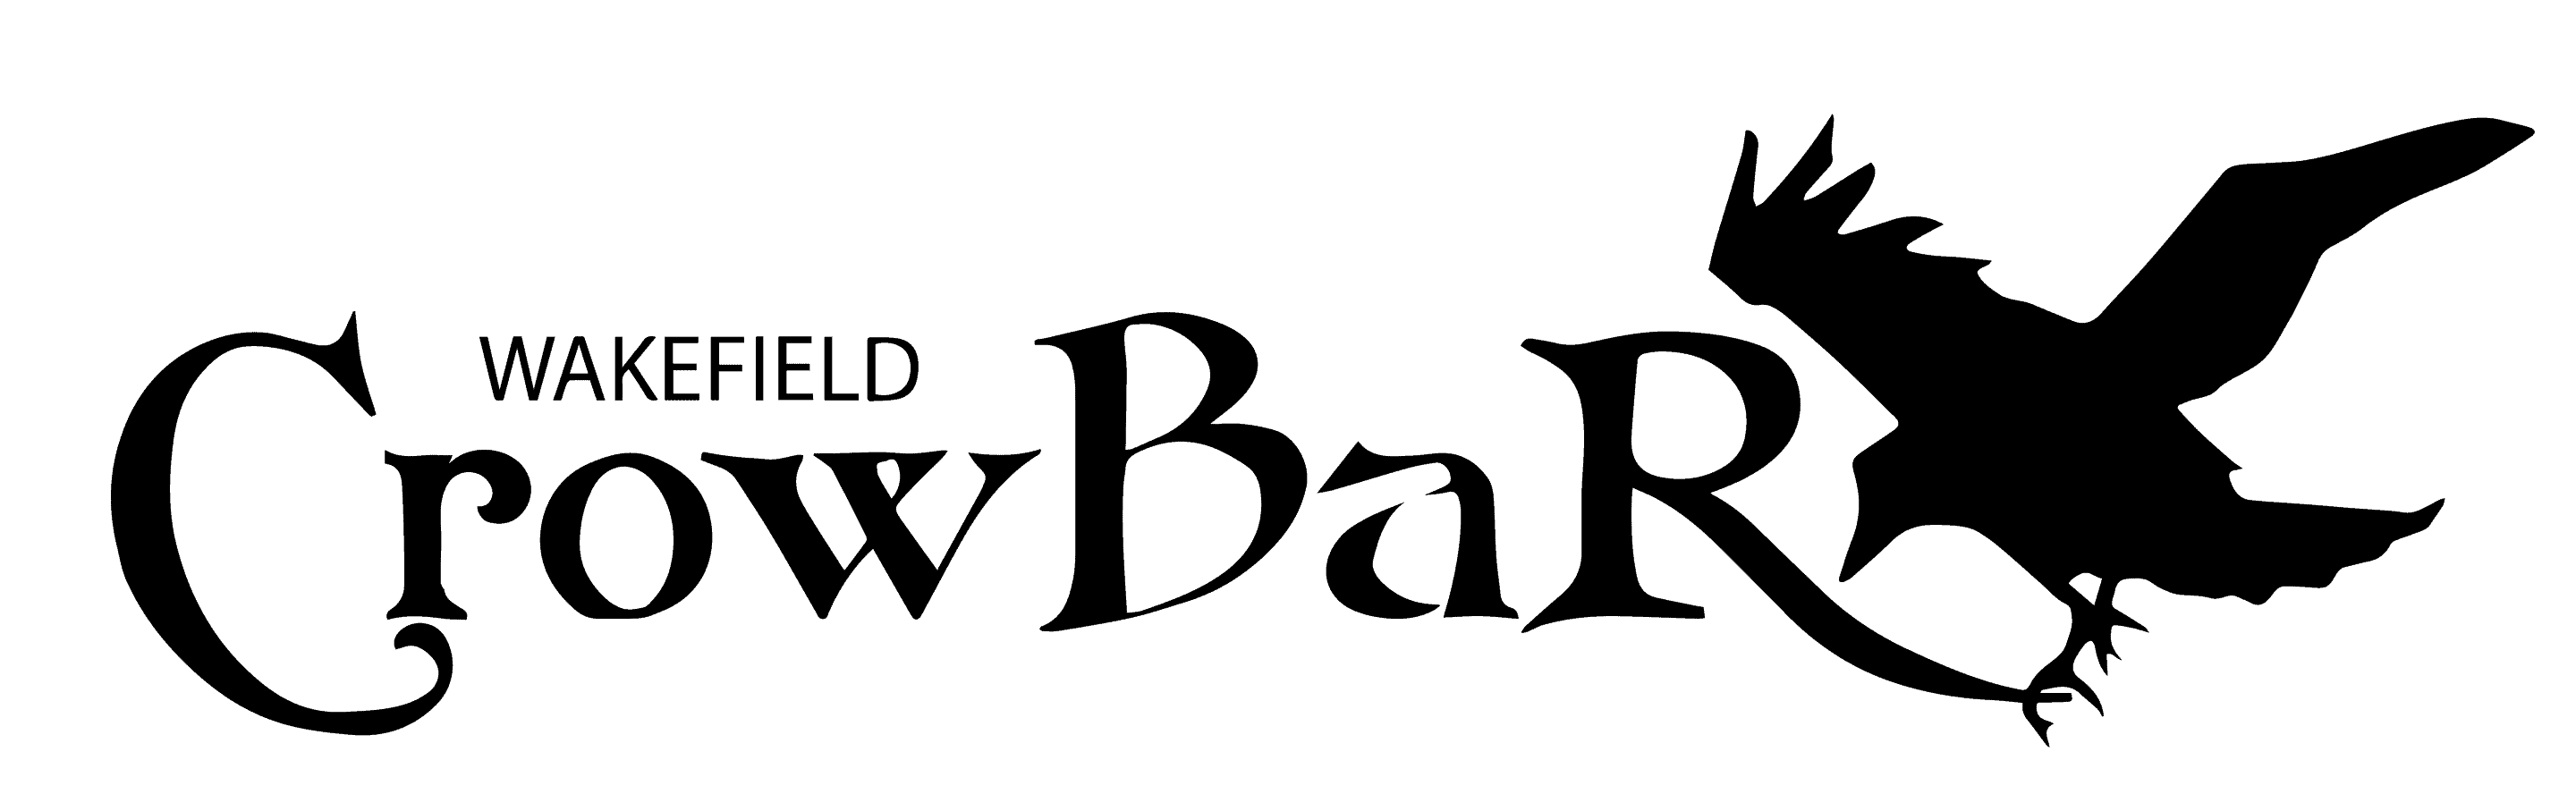 Crowbar logo